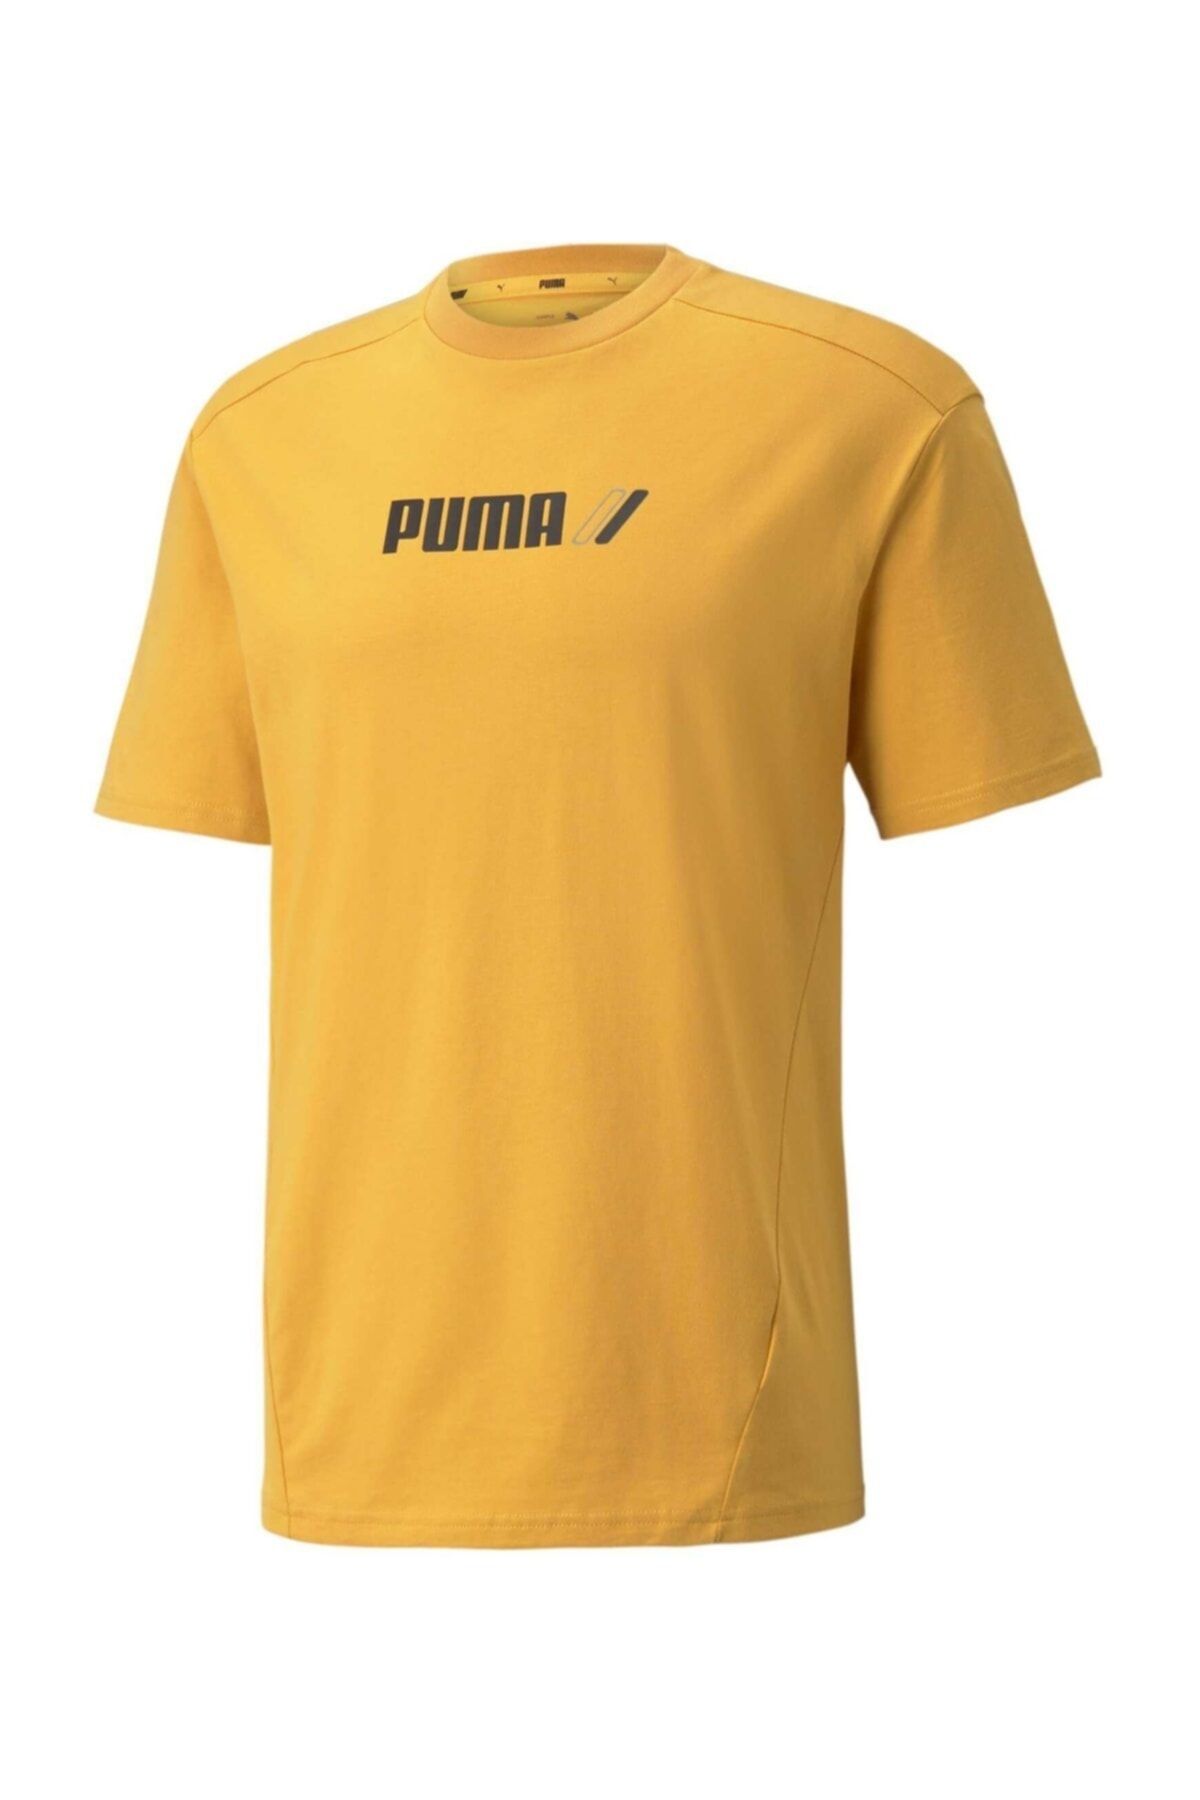 Puma Rad Cal Tee Erkek Sarı T-shirt - 58938537